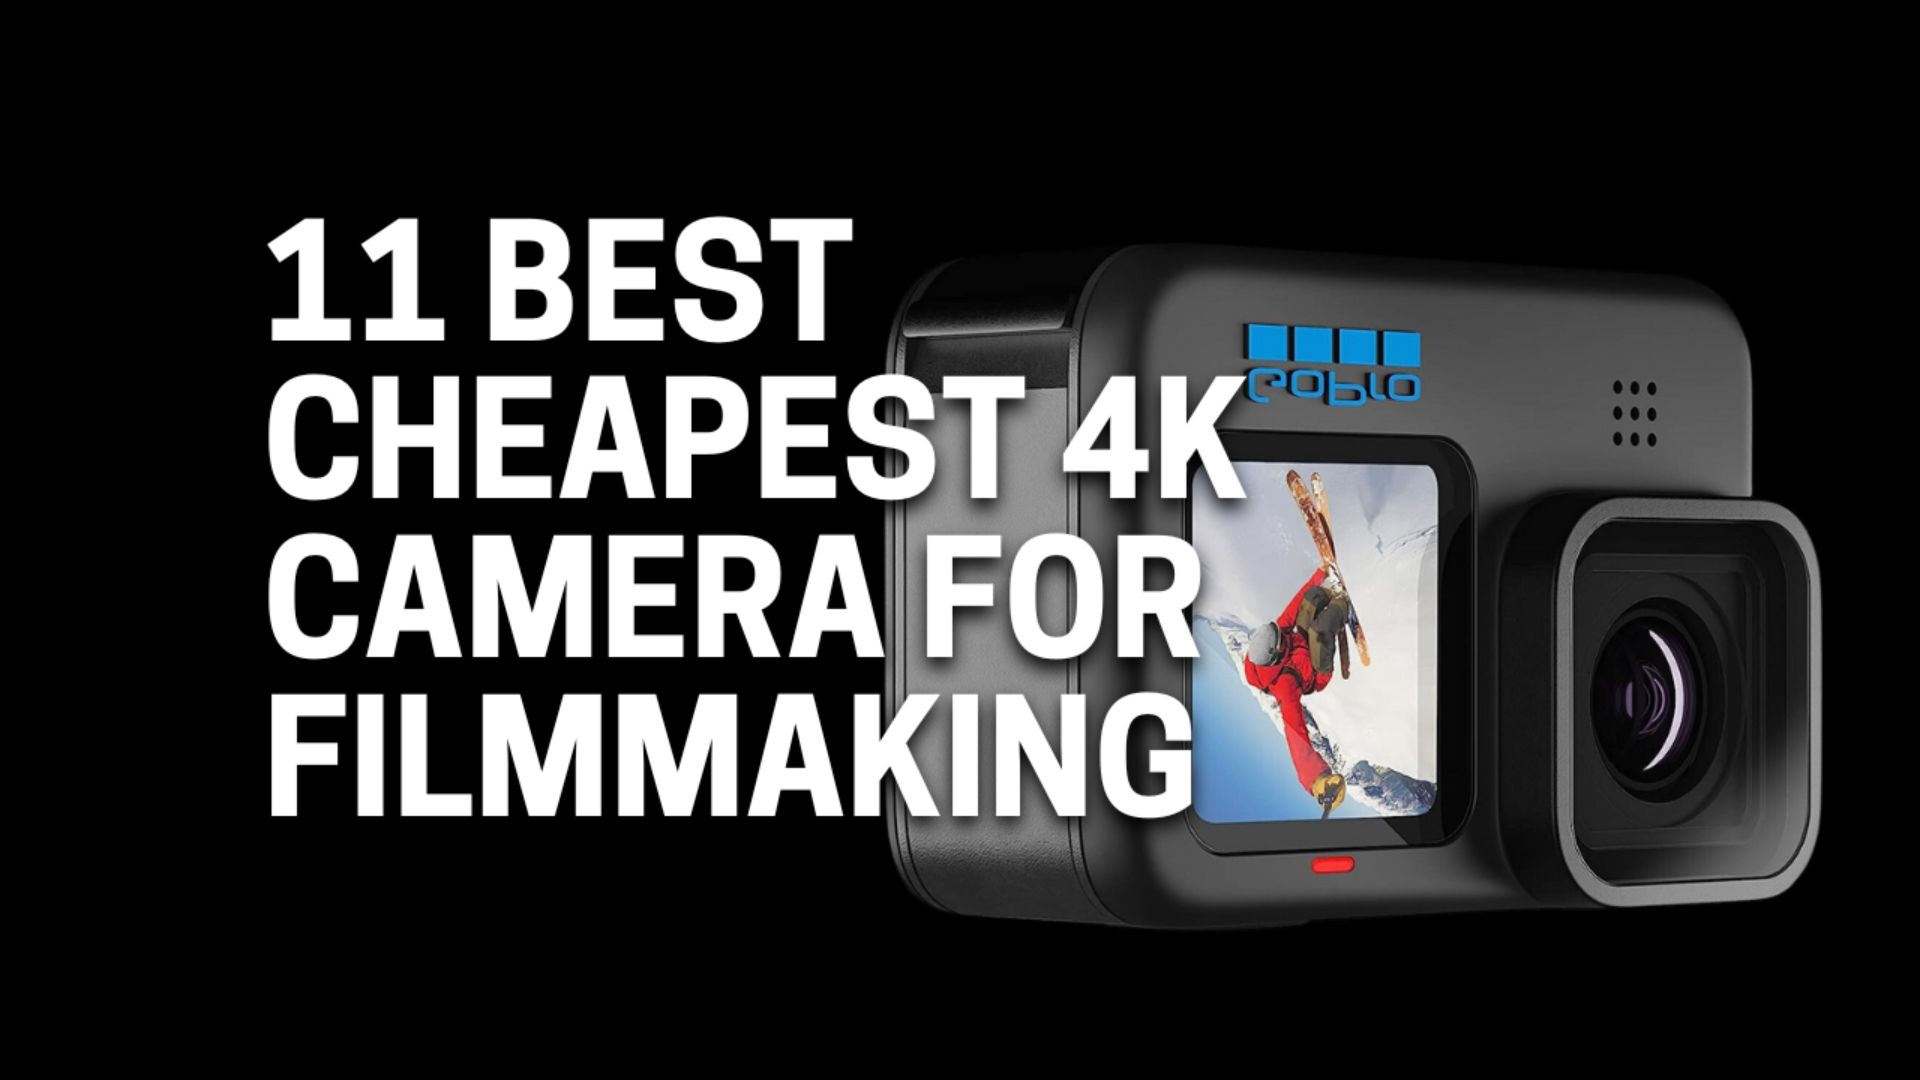 Best Cheapest 4K Camera For Filmmaking